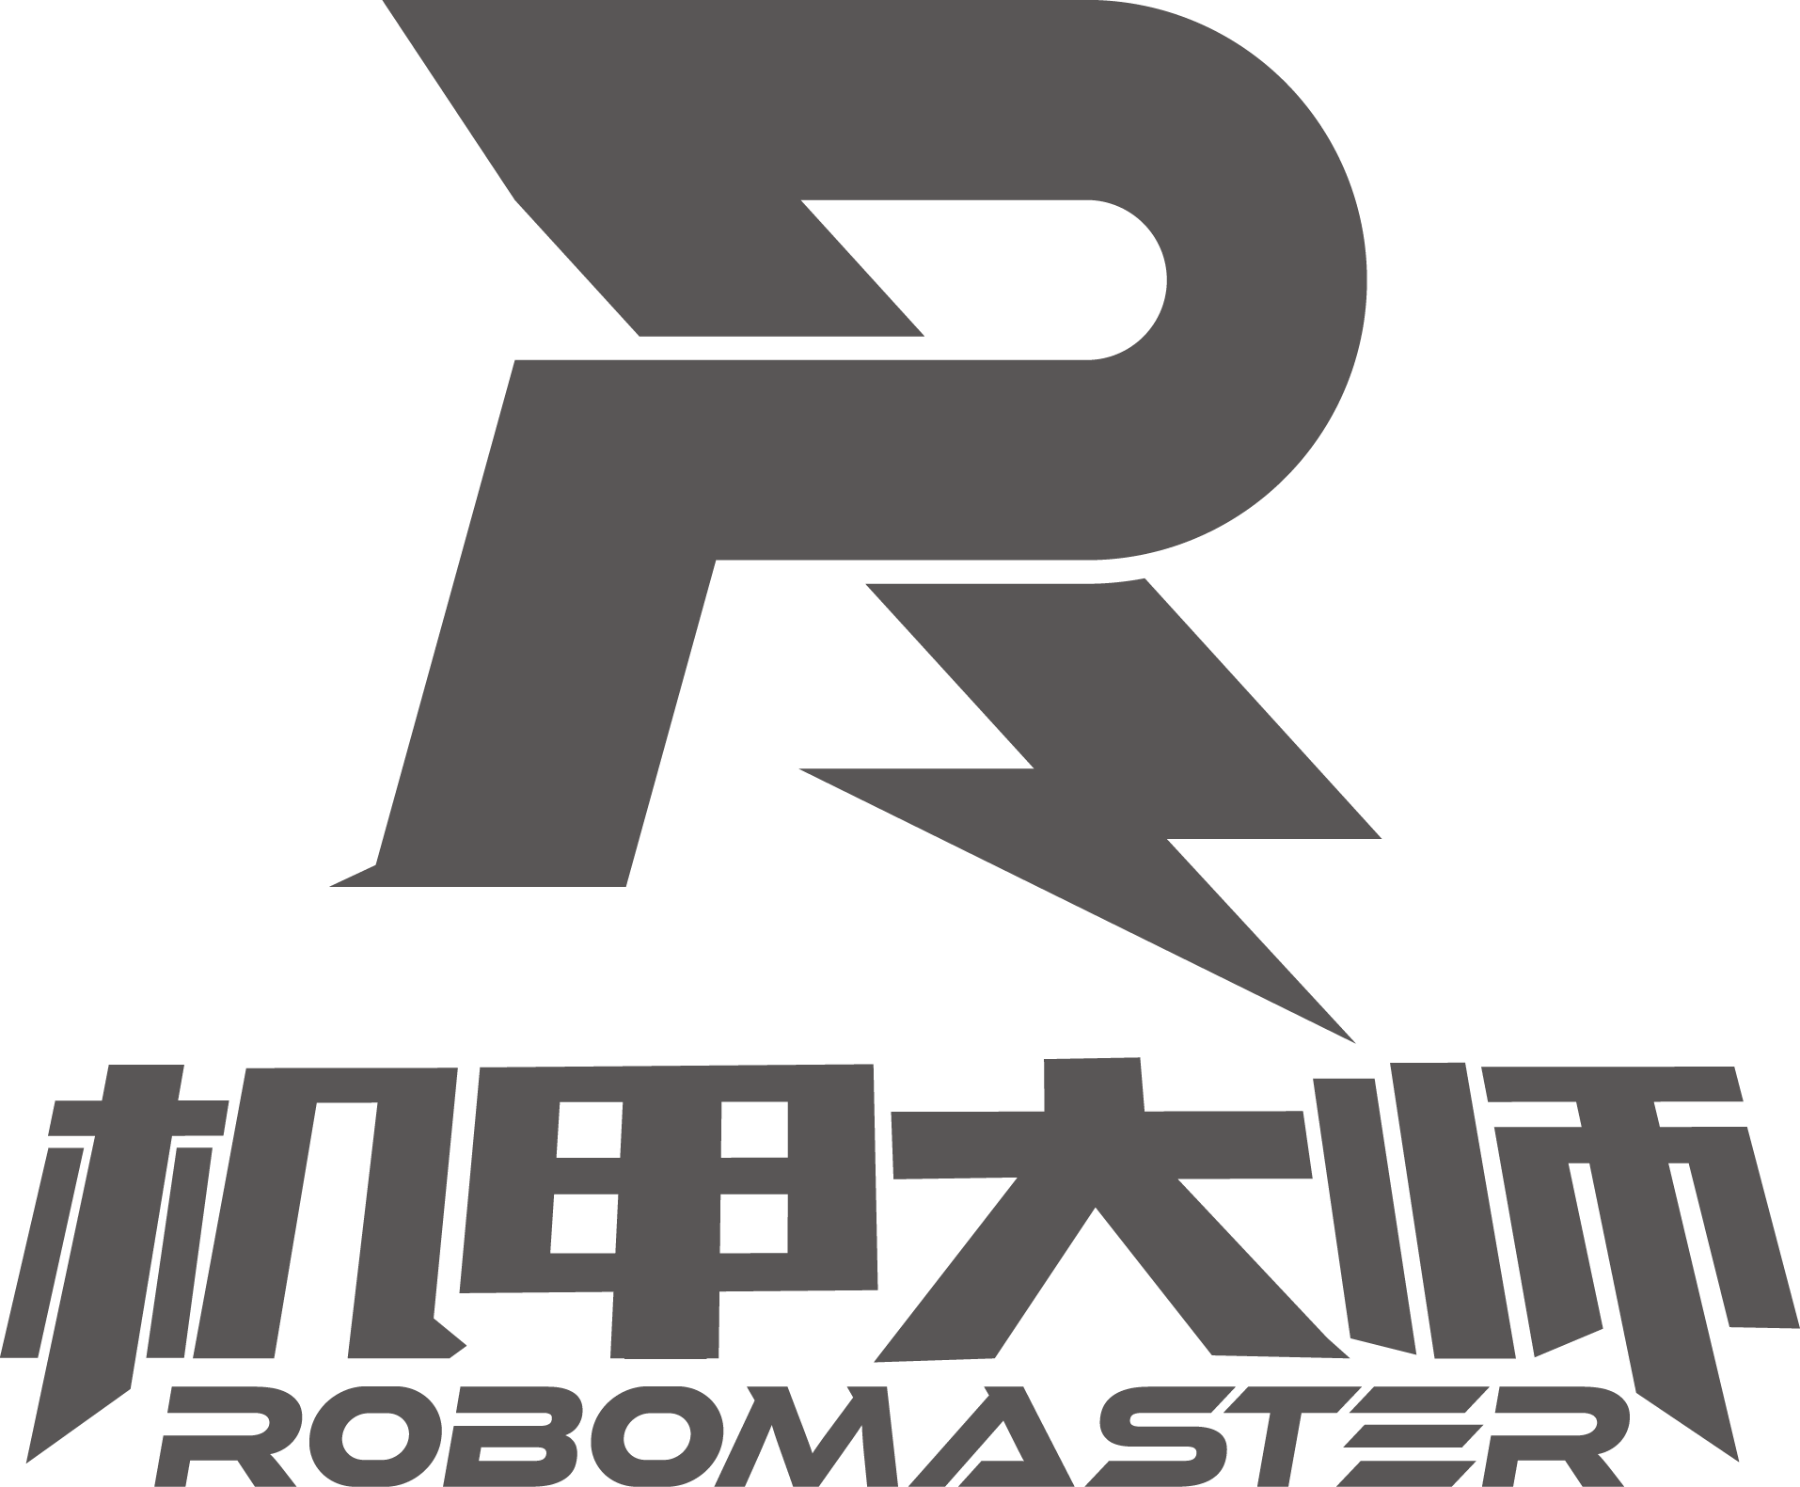 Robomaster